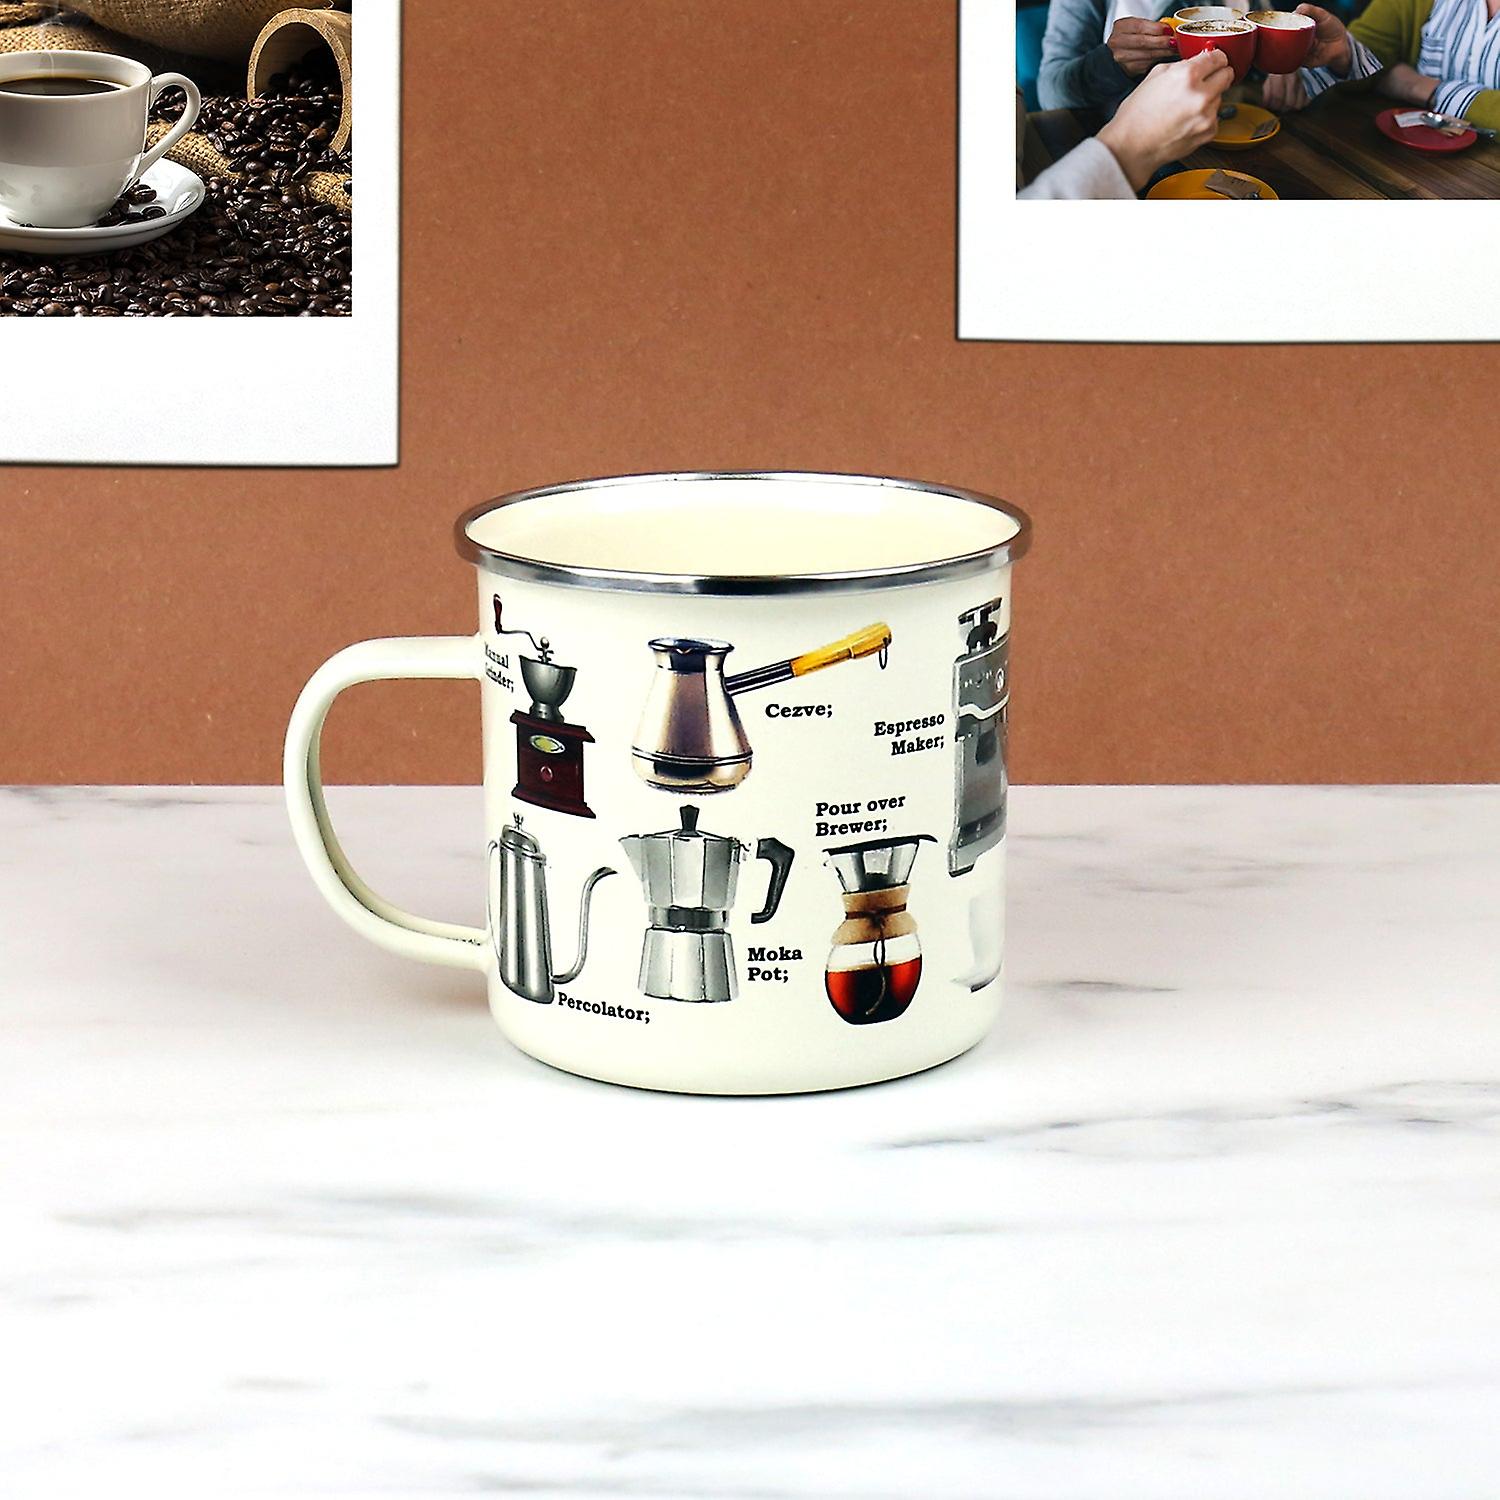 Enamel Mug with Coffee Design